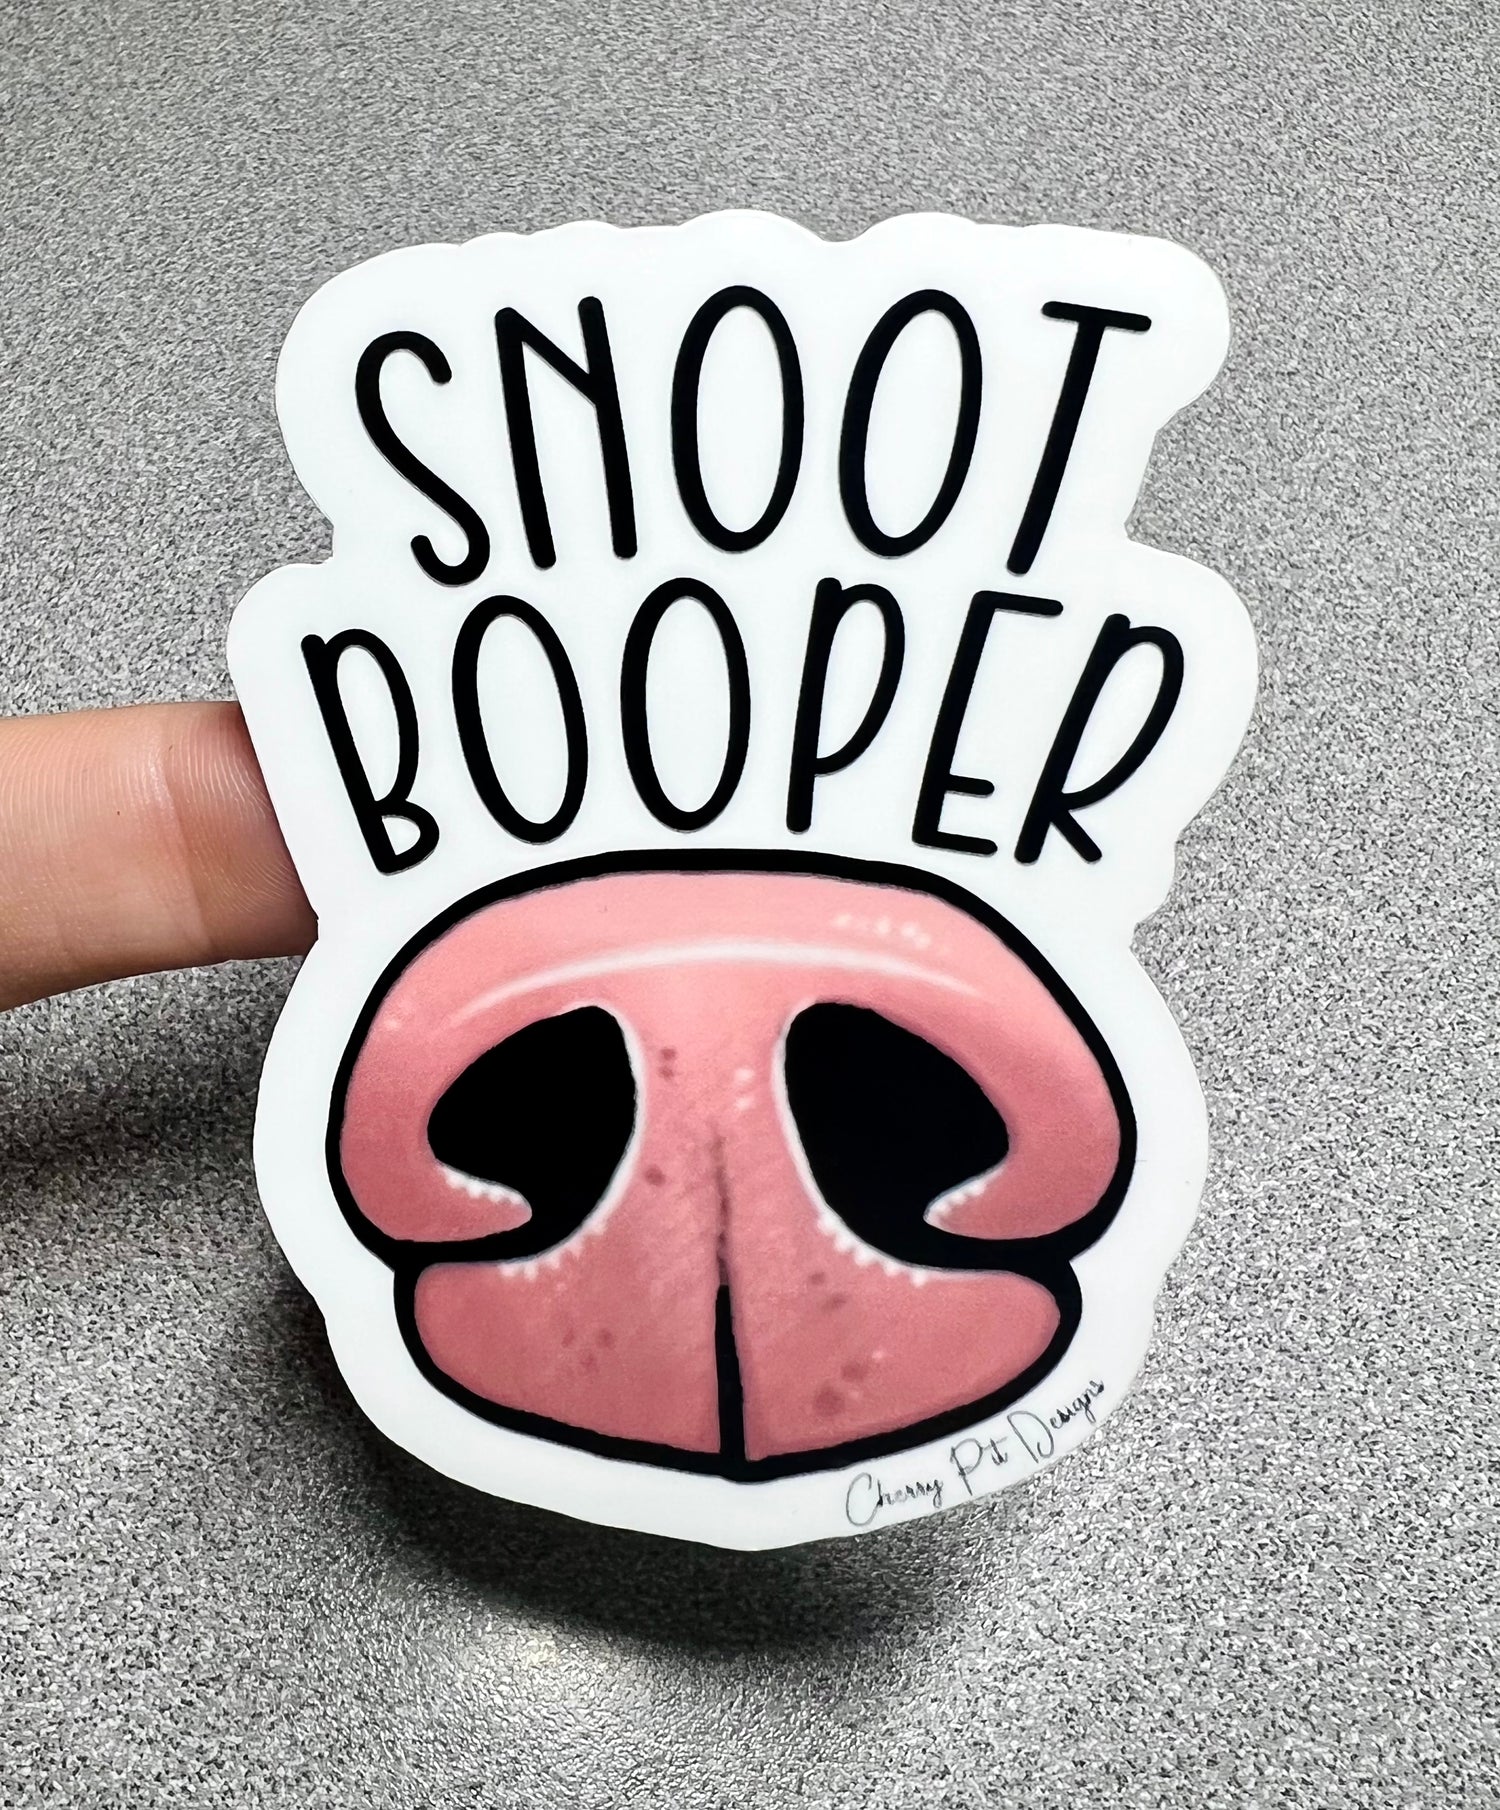 Snoot Booper Dog Nose Vinyl Sticker Decal - Cherry Pit Designs